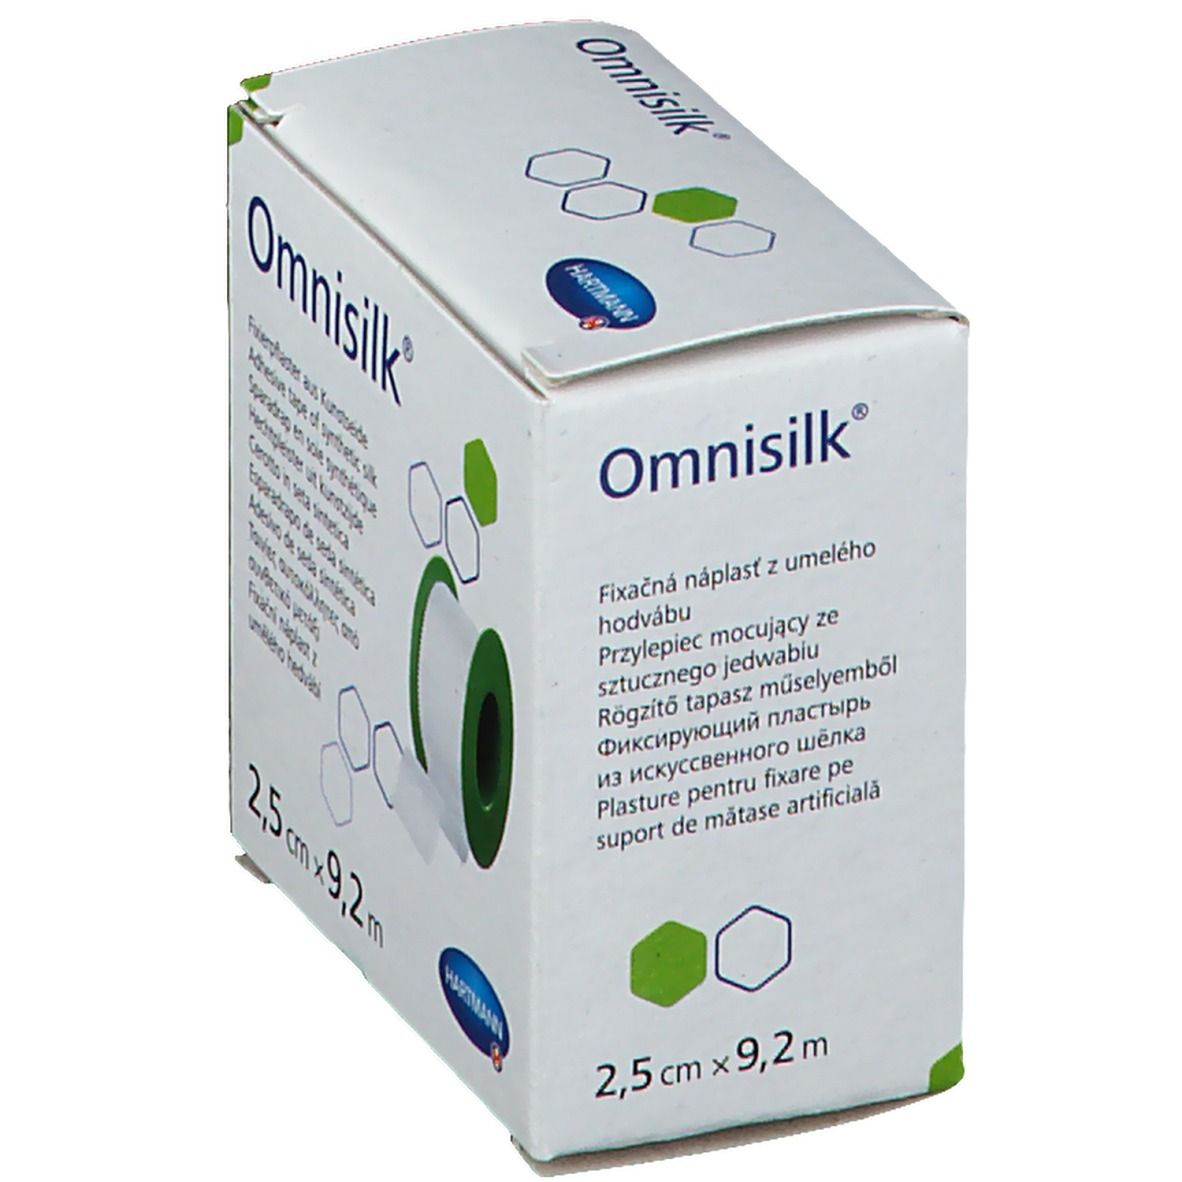 Omnisilk® Fixierpflaster 2,5 cm x 9,2 m